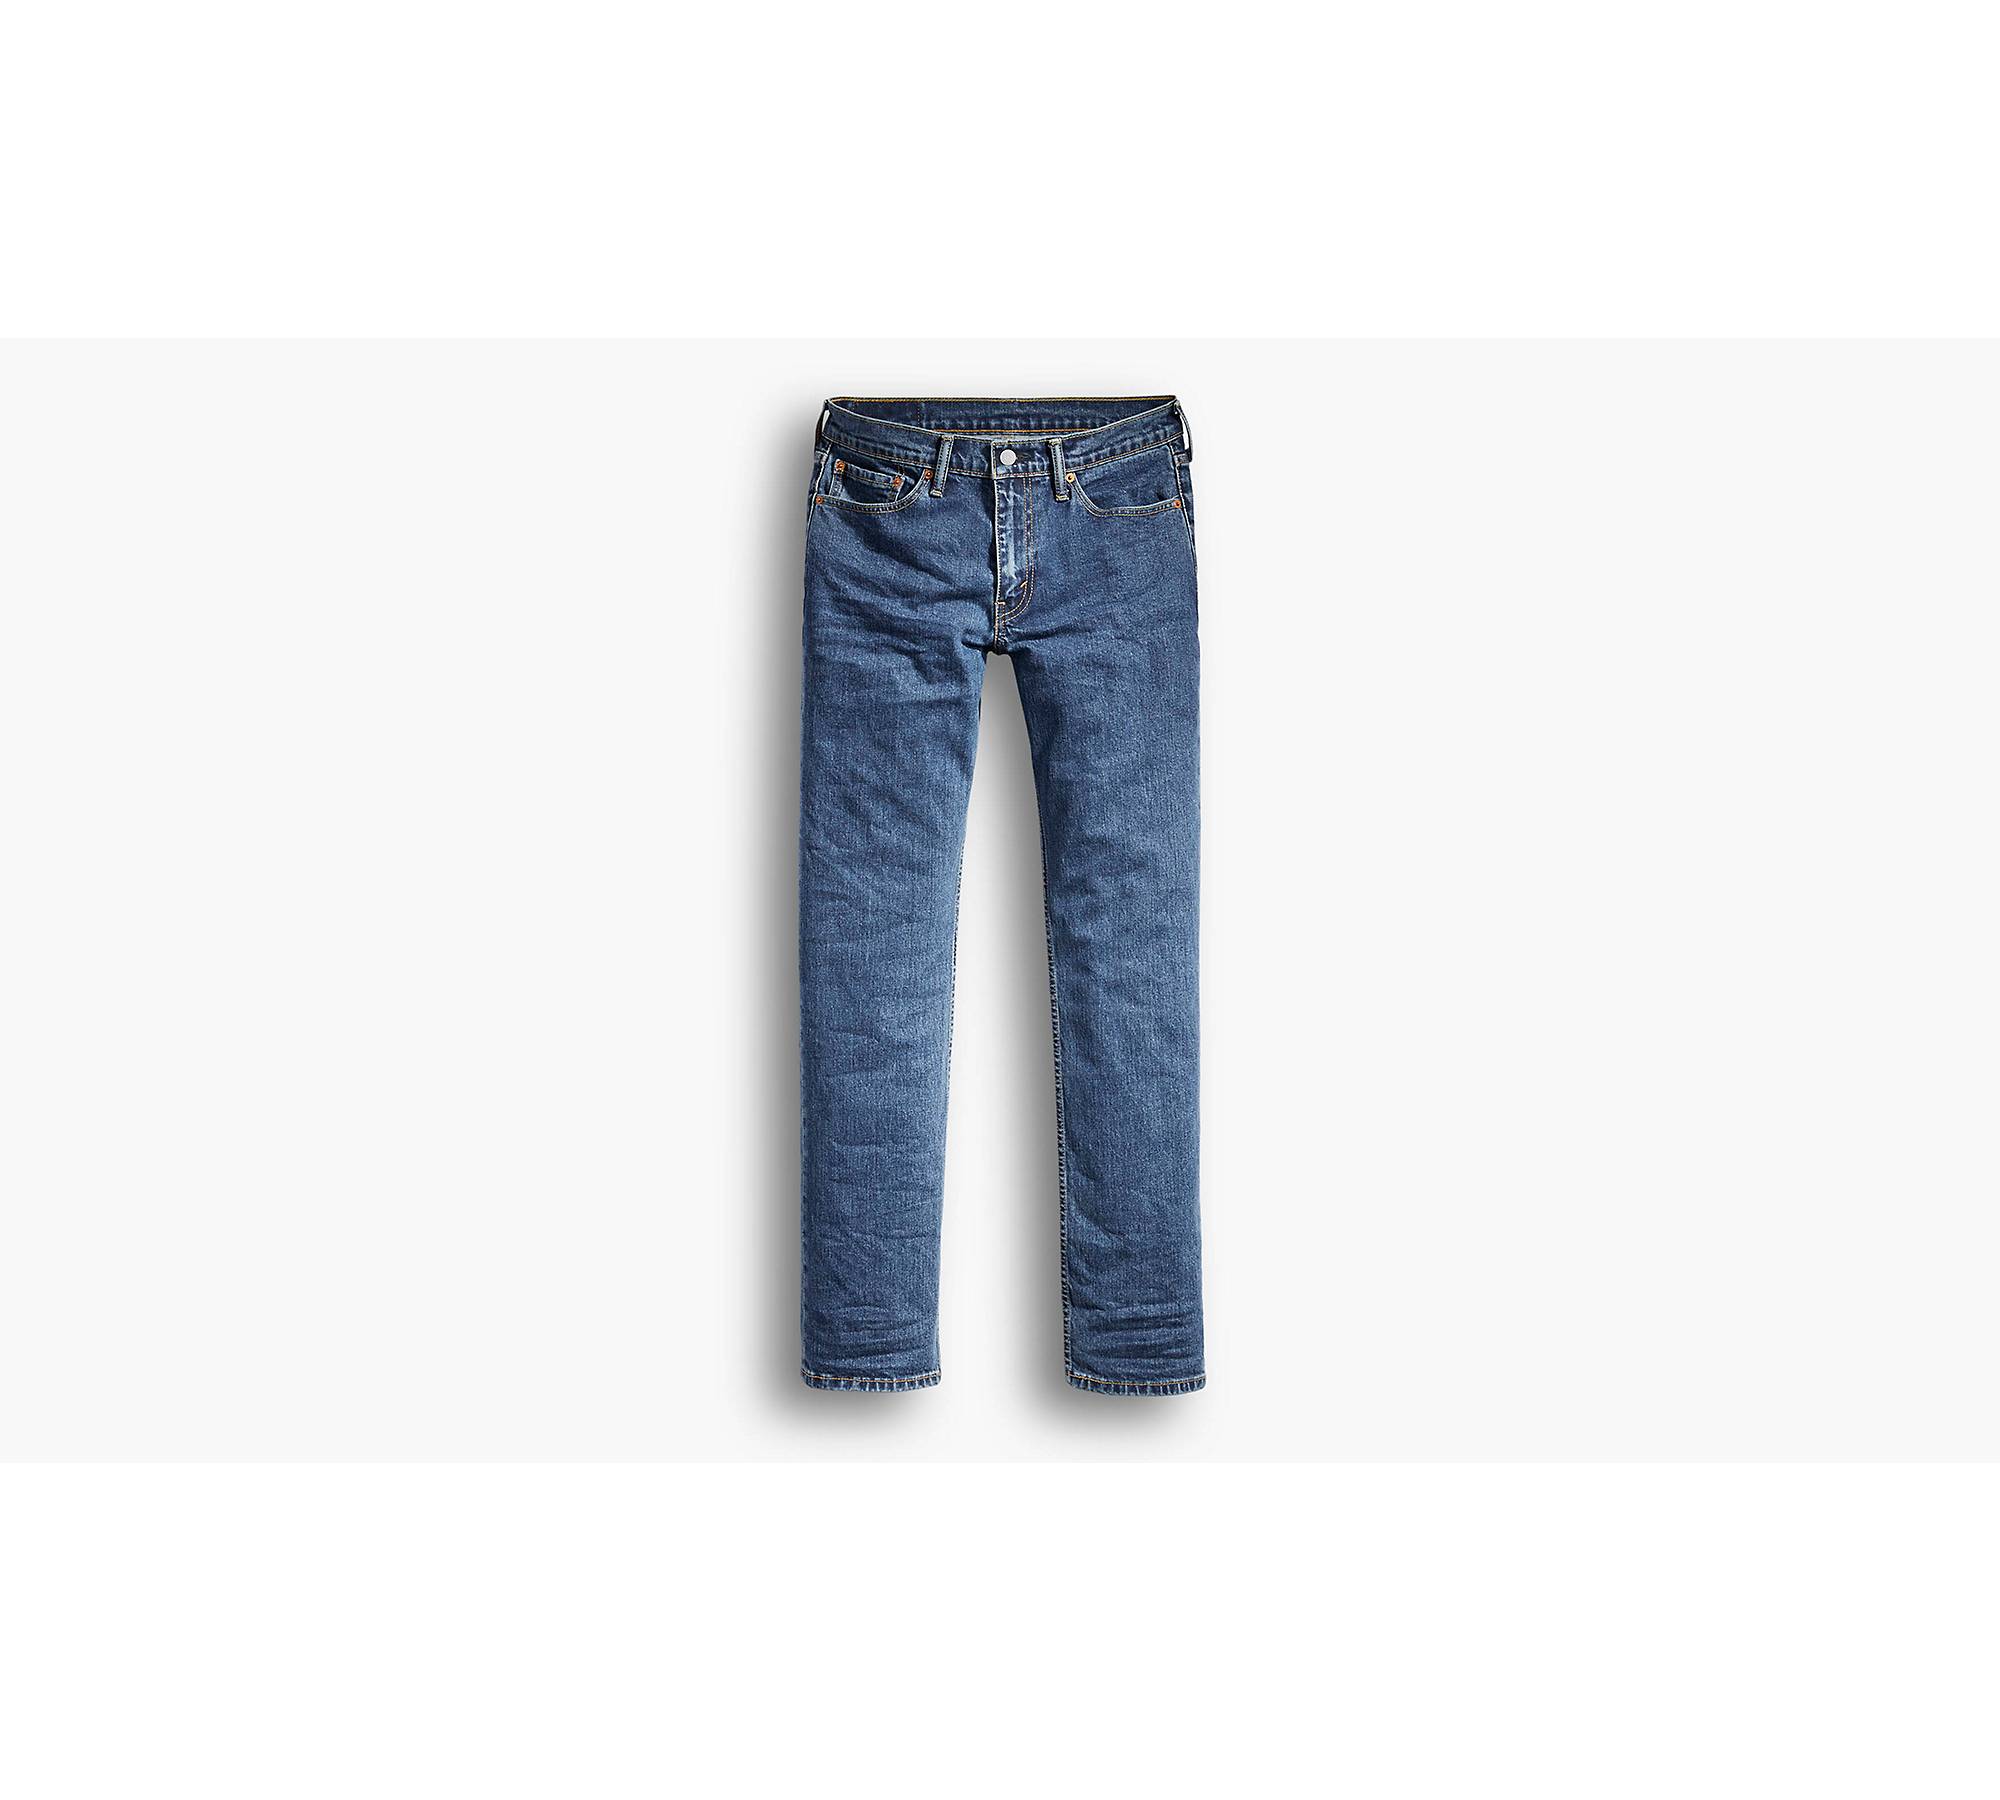 Wrap tage fattigdom 514™ Straight Fit Men's Jeans - Medium Wash | Levi's® US